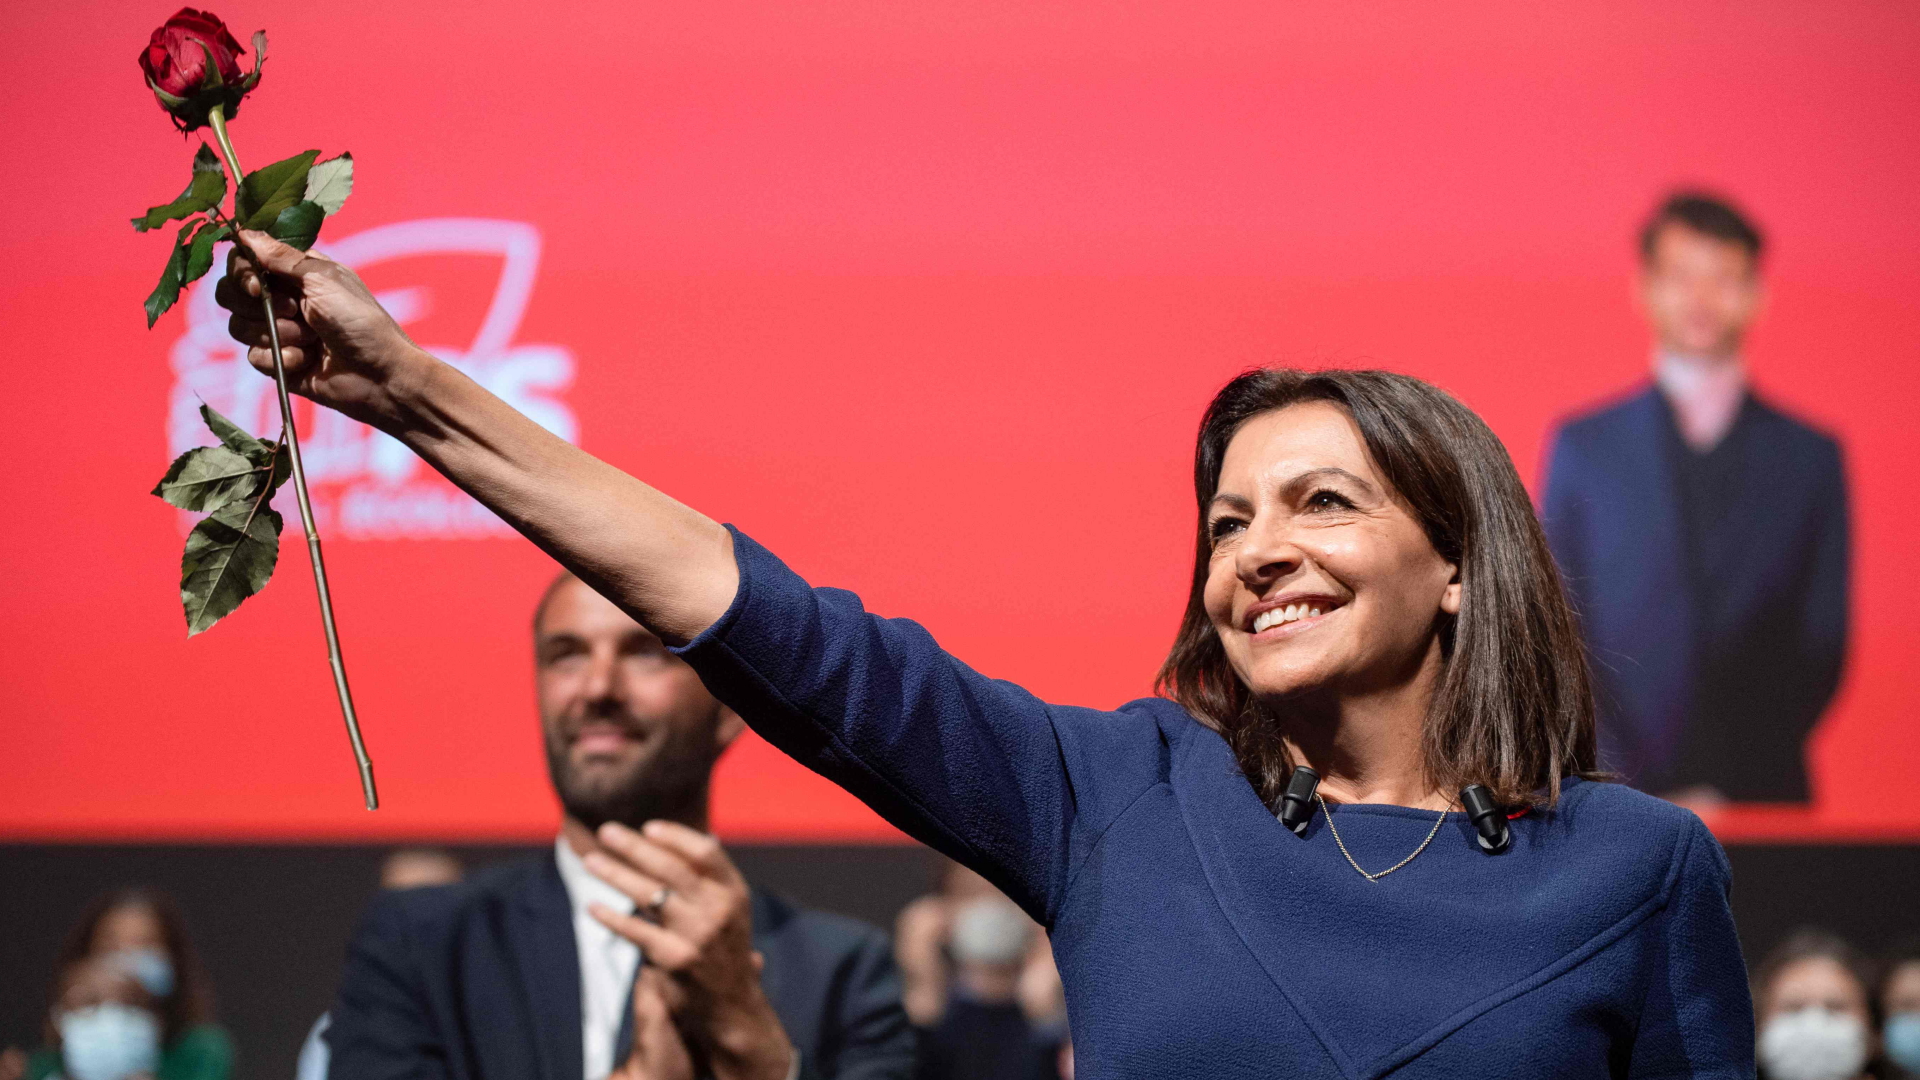 Die Pariser Bürgermeisterin Hidalgo bei ihrer Ernennung zur Präsidentschaftskandidatin der Sozialisten | AFP